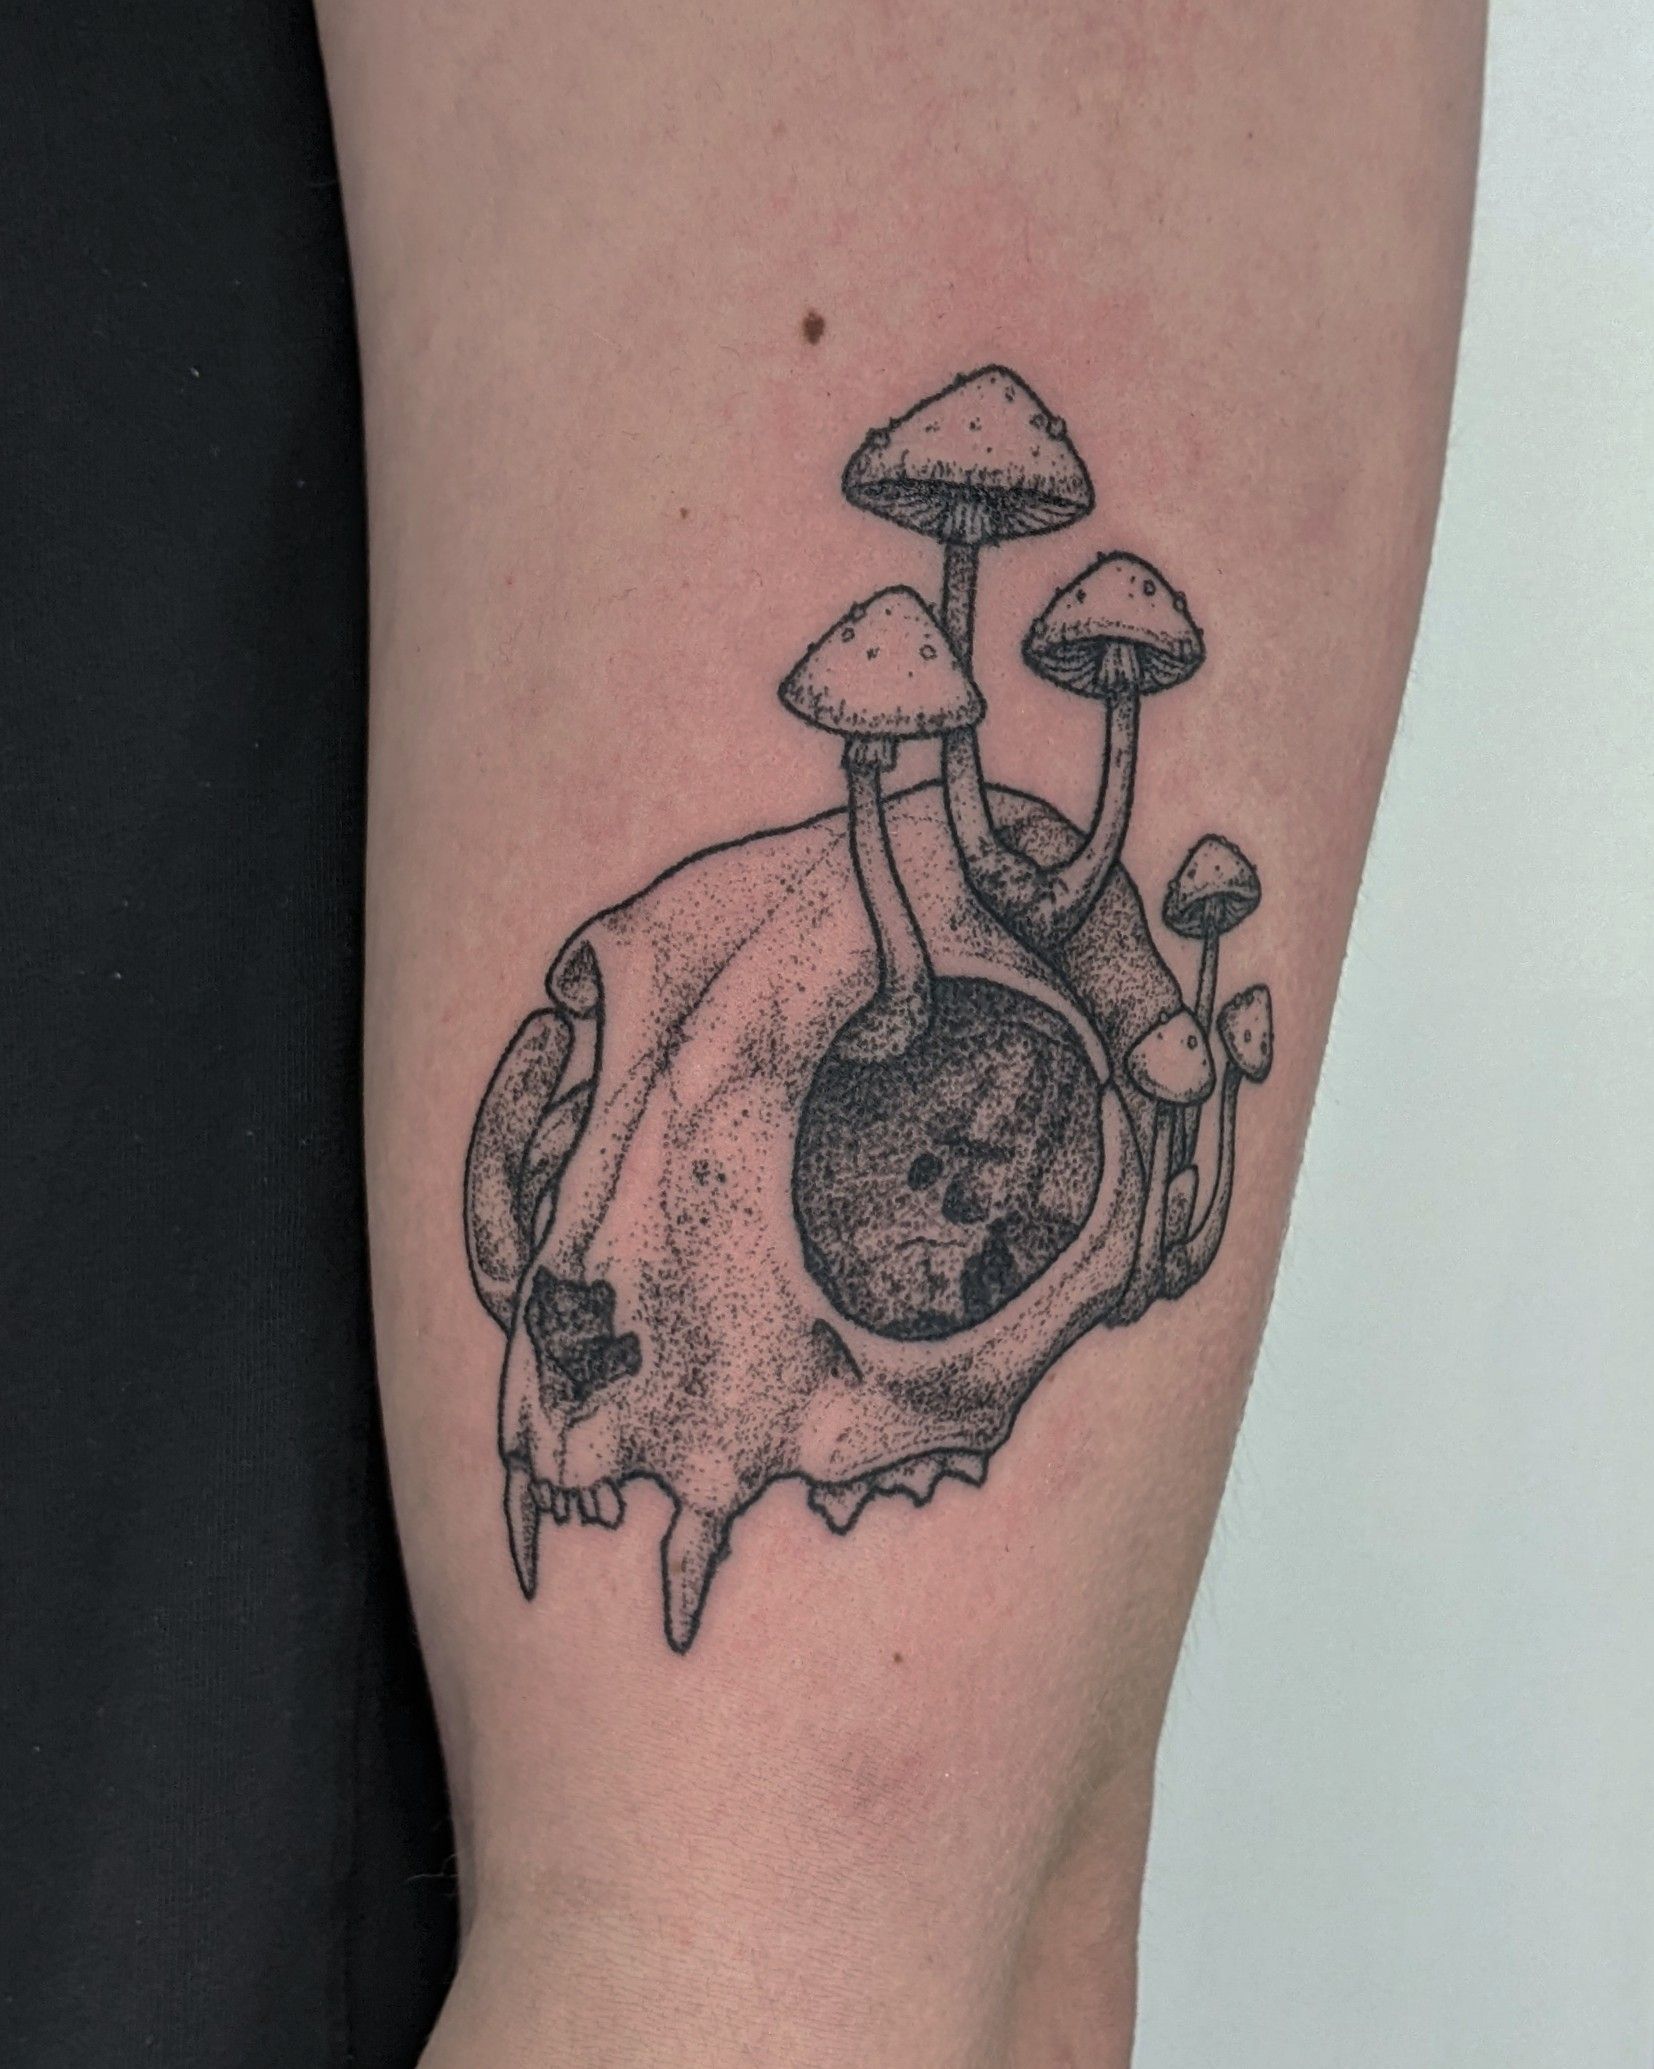 A Trip to Wonderland — Tattooing a Mushroom Tattoo